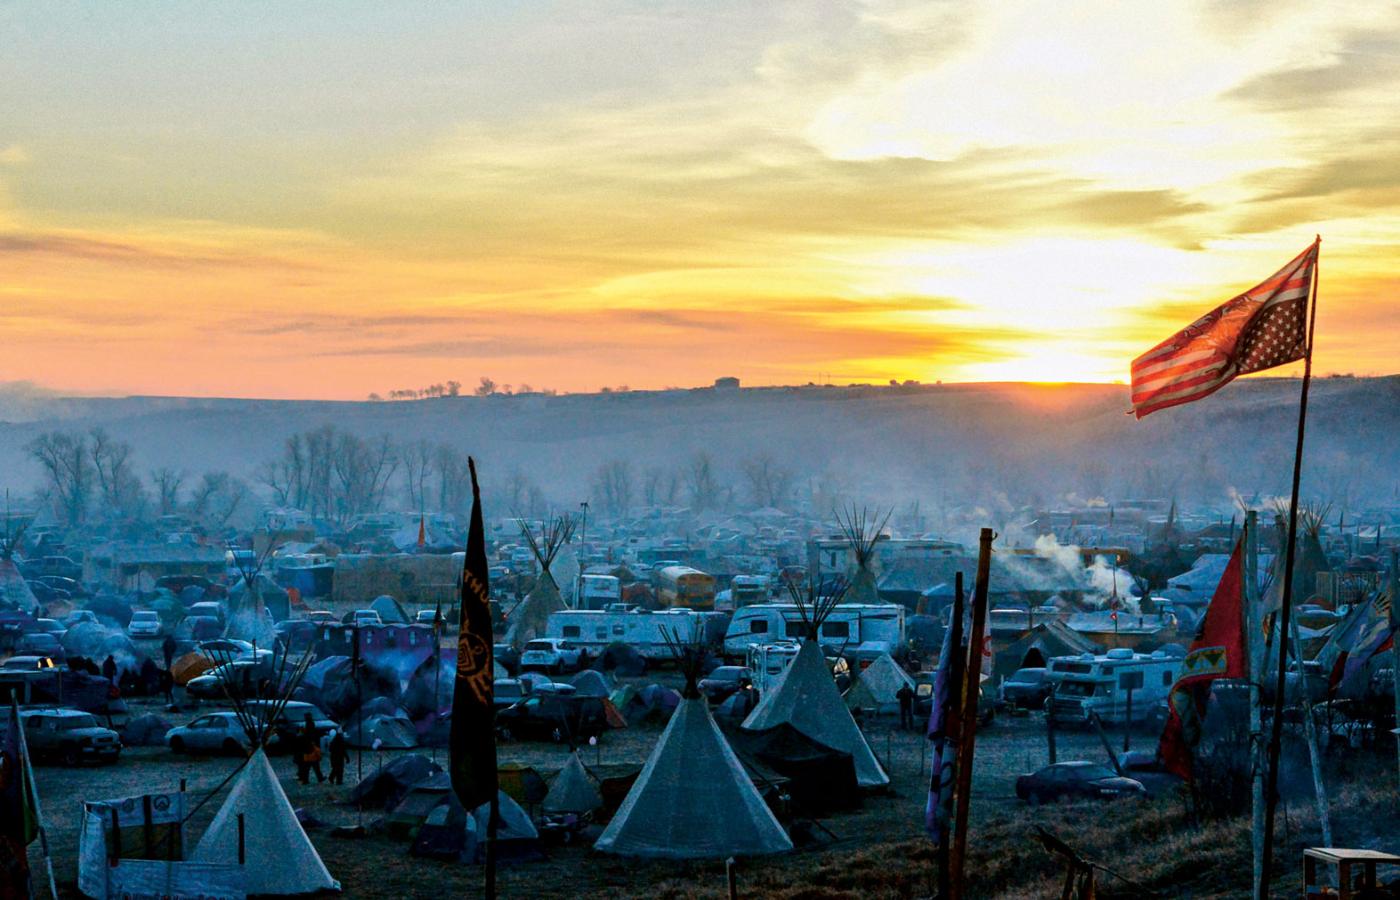 Rezerwat Standing Rock, obóz Indian uczestniczących w proteście 300 plemion przeciwko budowie ropociągu.